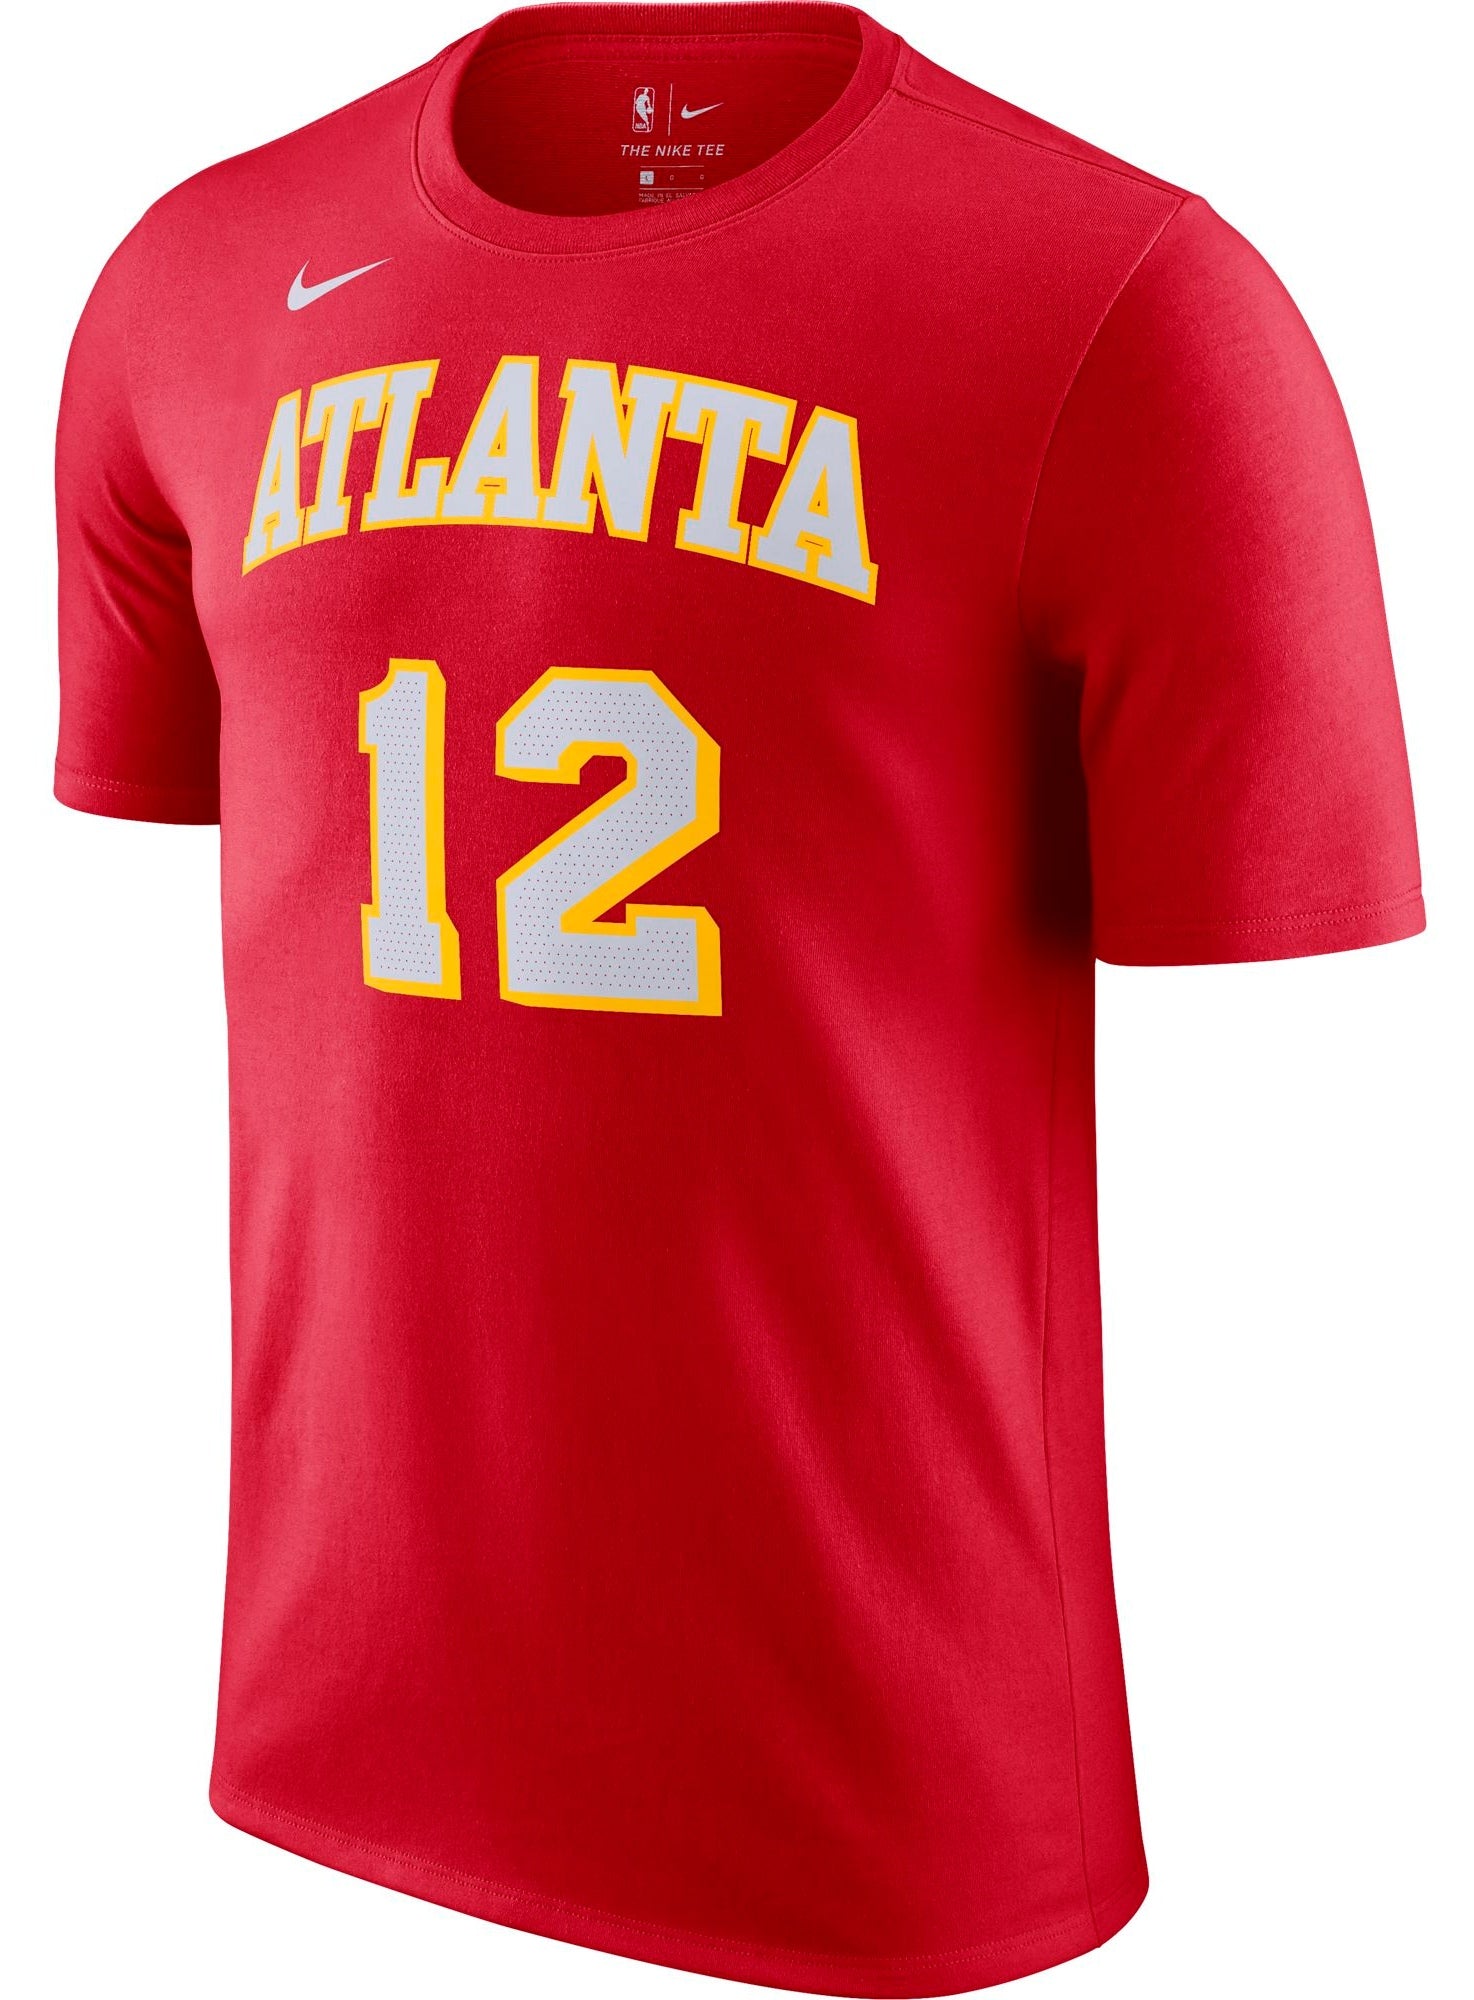 3XL) New Nike Atlanta Falcons Dri-FIT Shirt